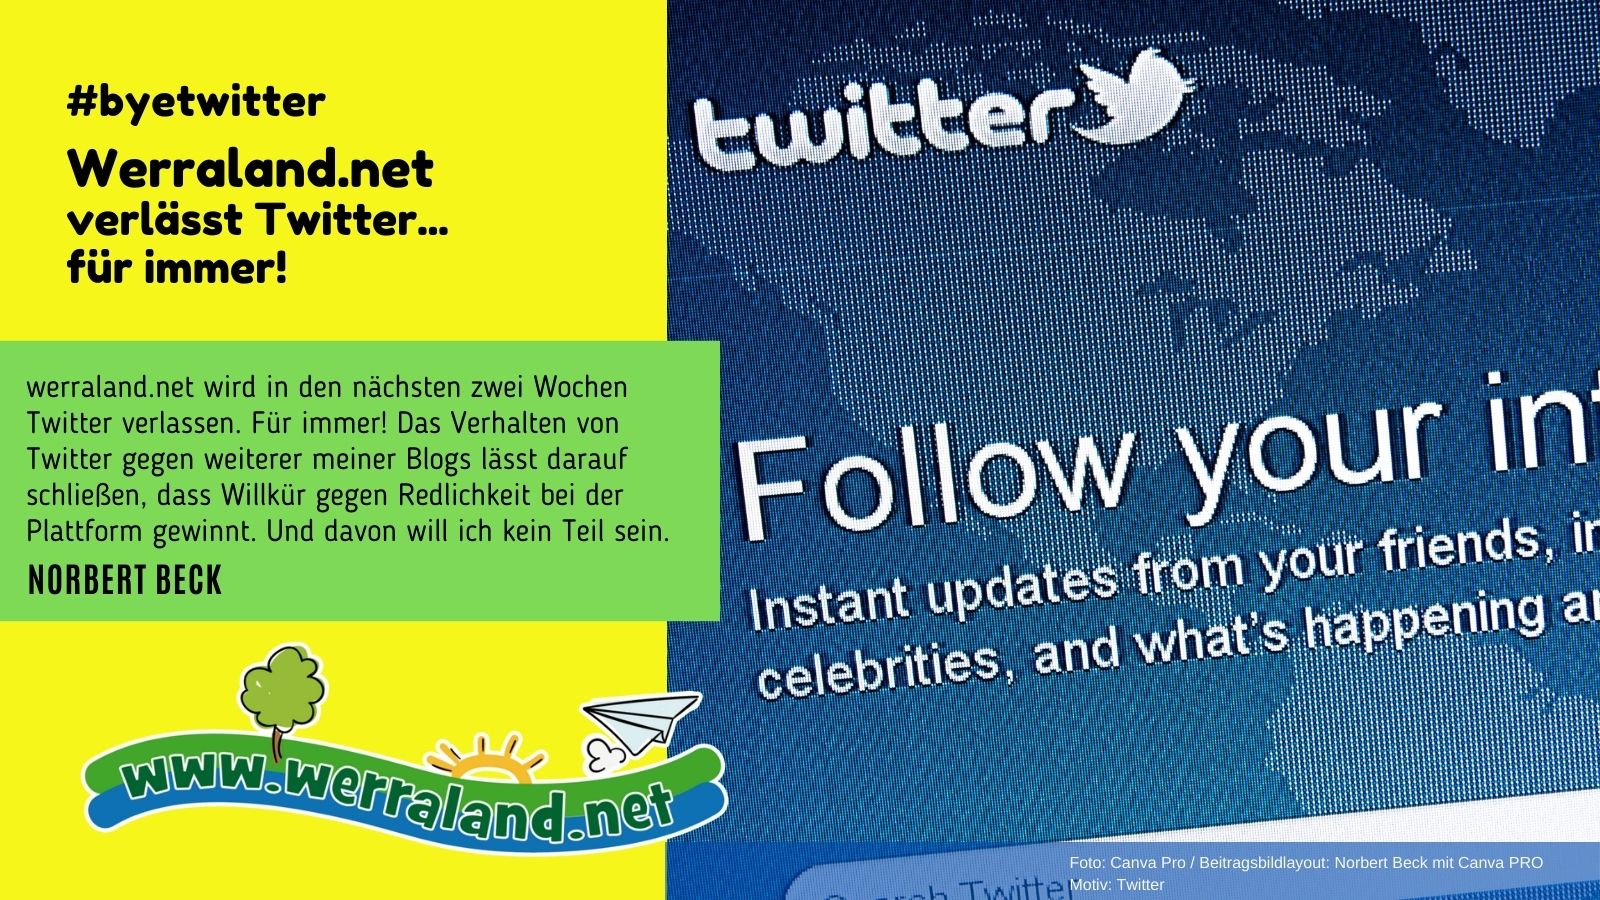 Werraland.net verlässt Twitter … für immer!